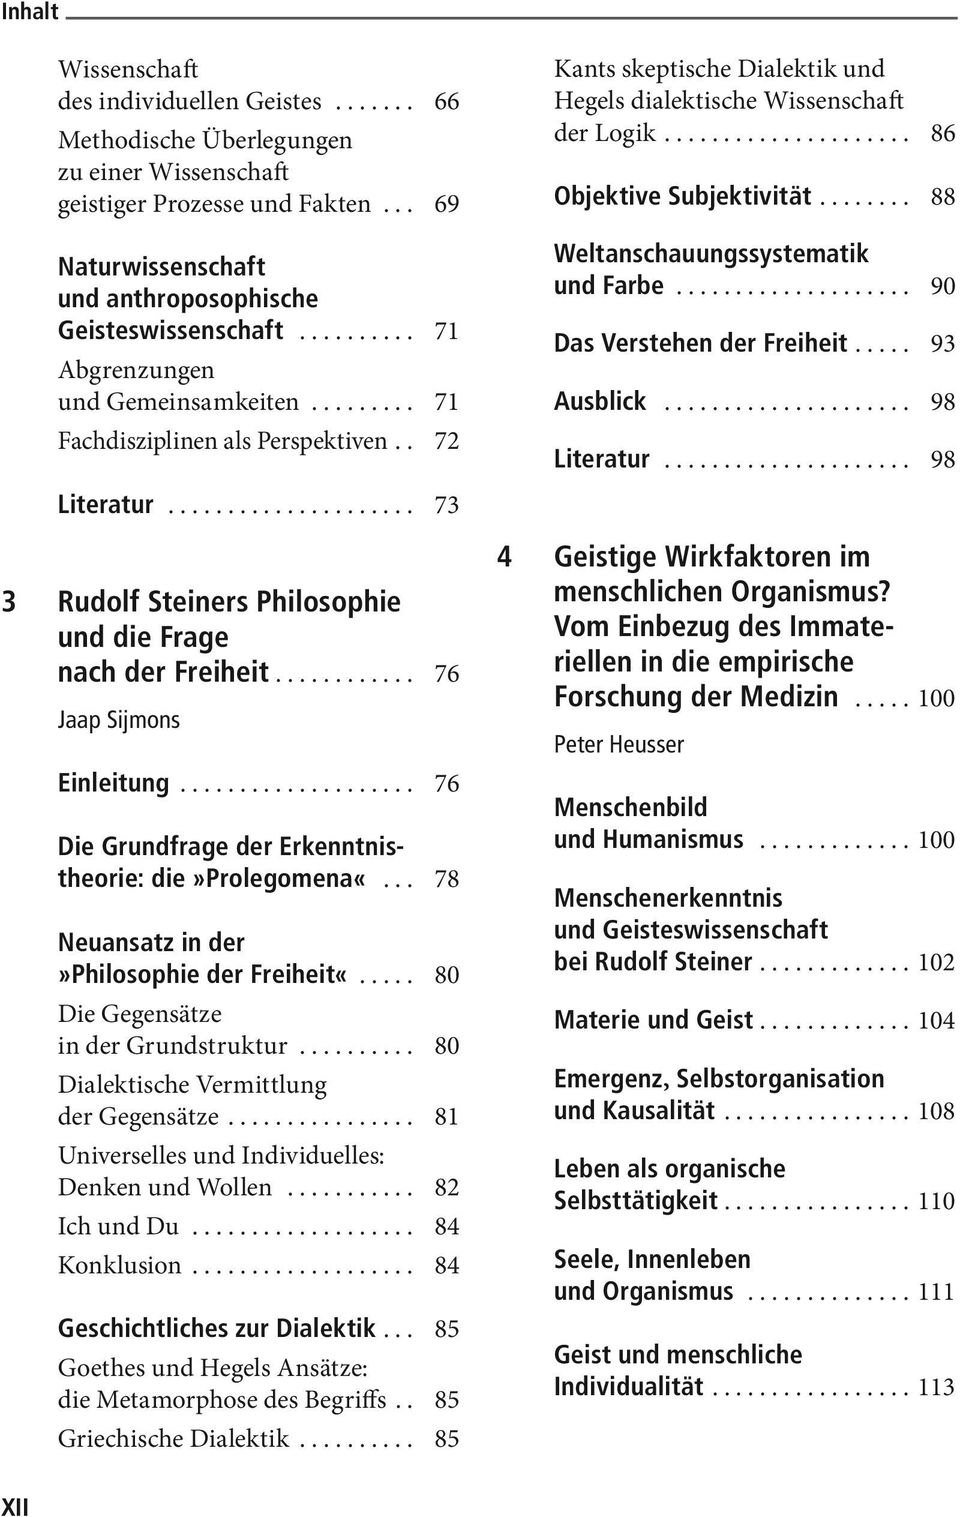 .. 76 Die Grundfrage der Erkenntnistheorie: die»prolegomena«... 78 Neuansatz in der»philosophie der Freiheit«... 80 Die Gegensätze in der Grundstruktur... 80 Dialektische Vermittlung der Gegensätze.